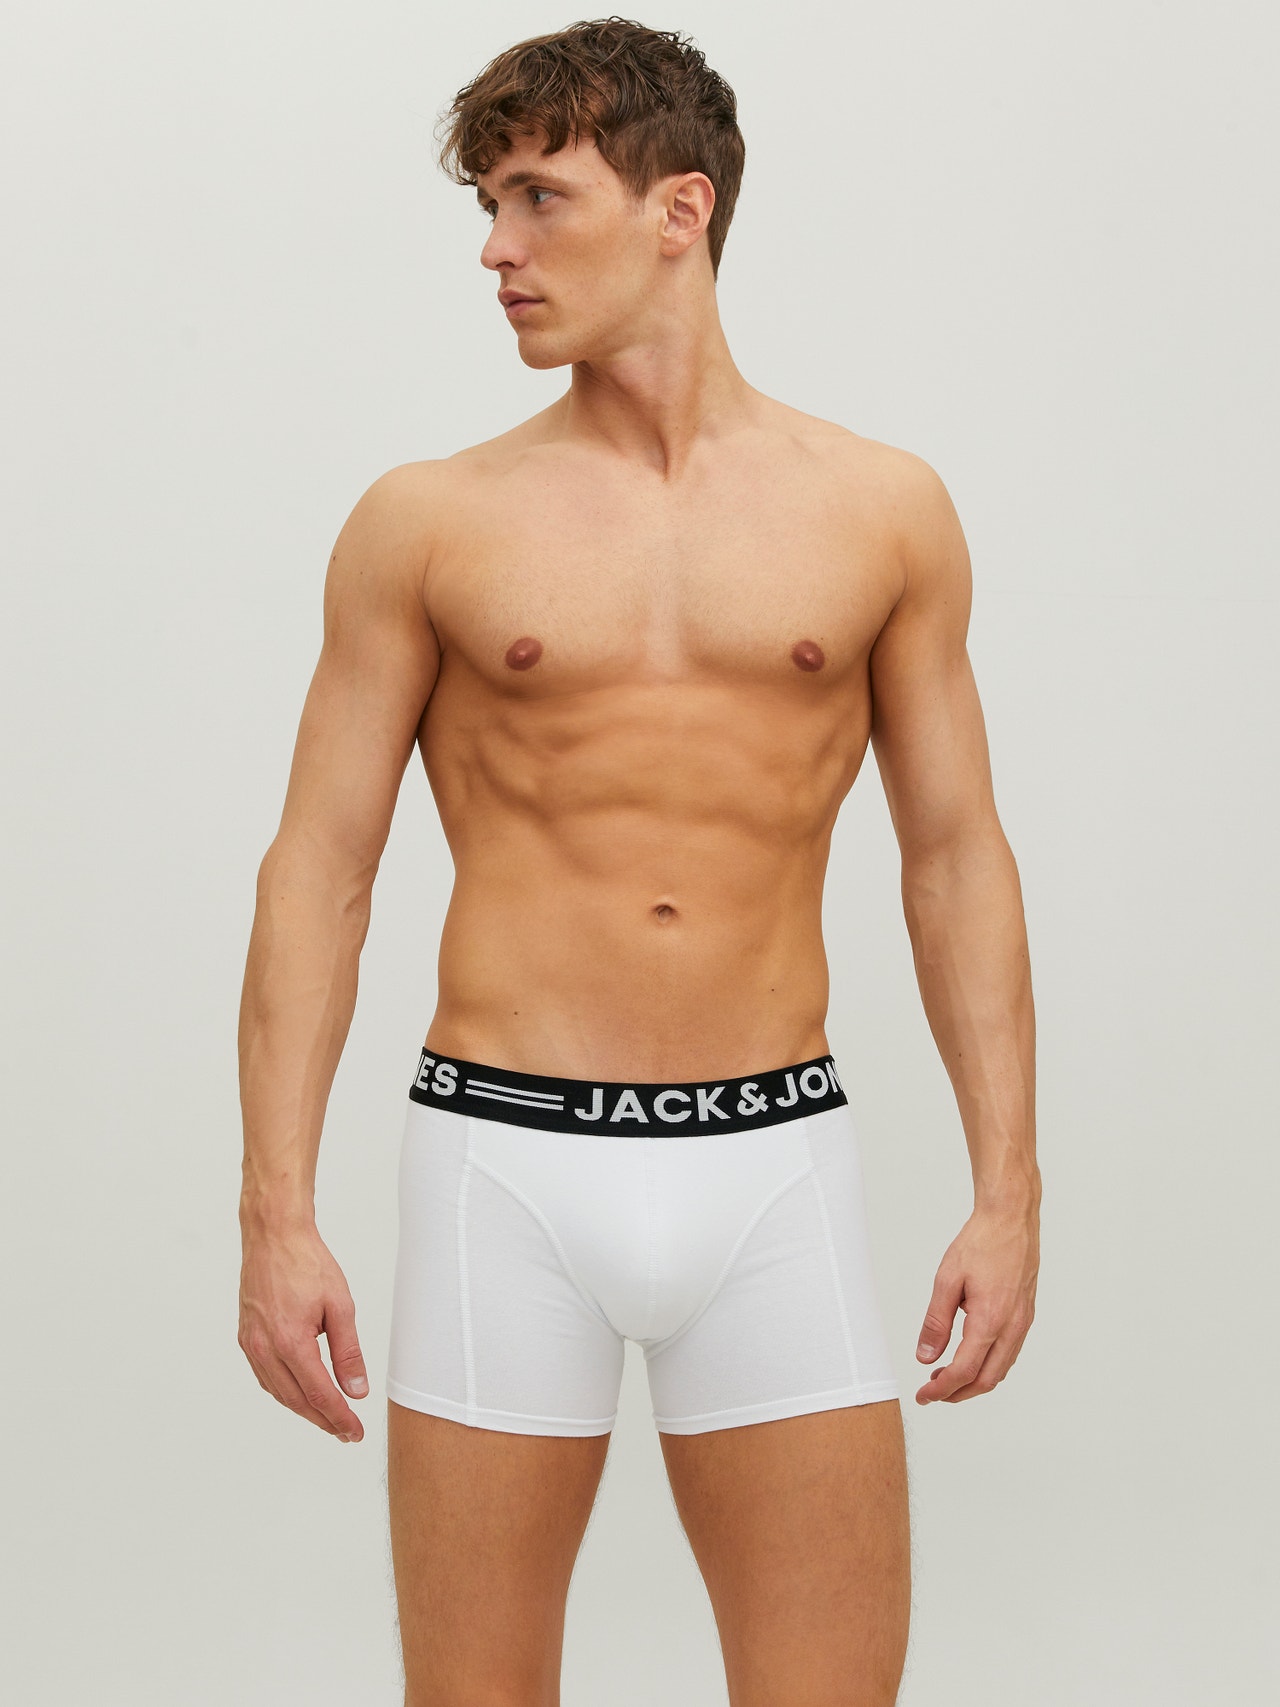 Jack & Jones 3-pack Trunks -White - 12081832